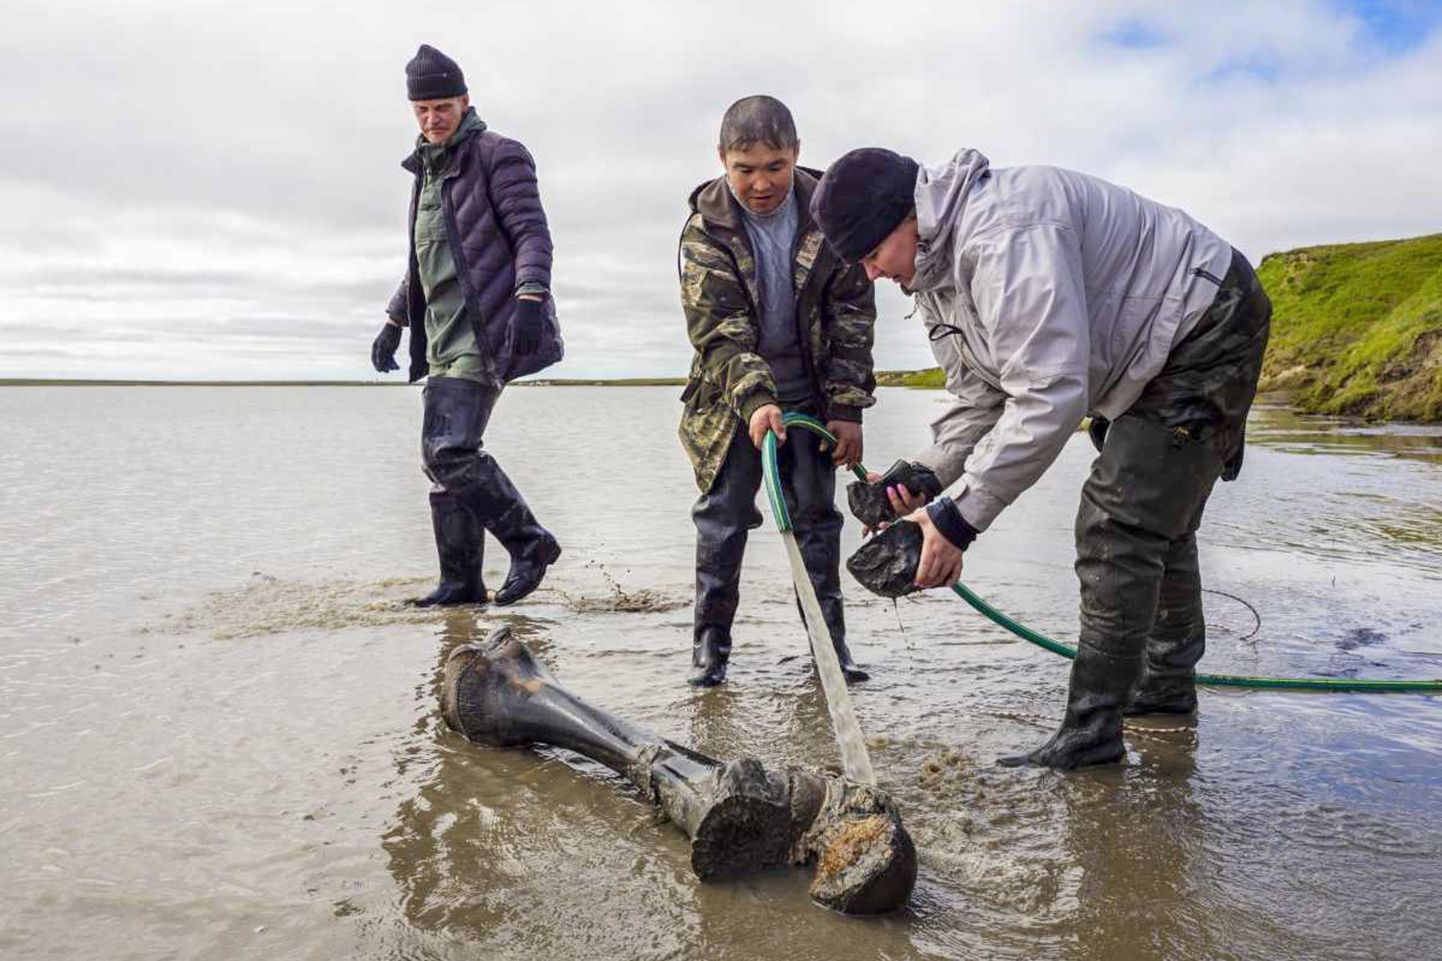 Venemaa polaaruuringute keskuse teadlased ja kohalik neenets Jamali poolsaare järvest leitud mammutiluudega